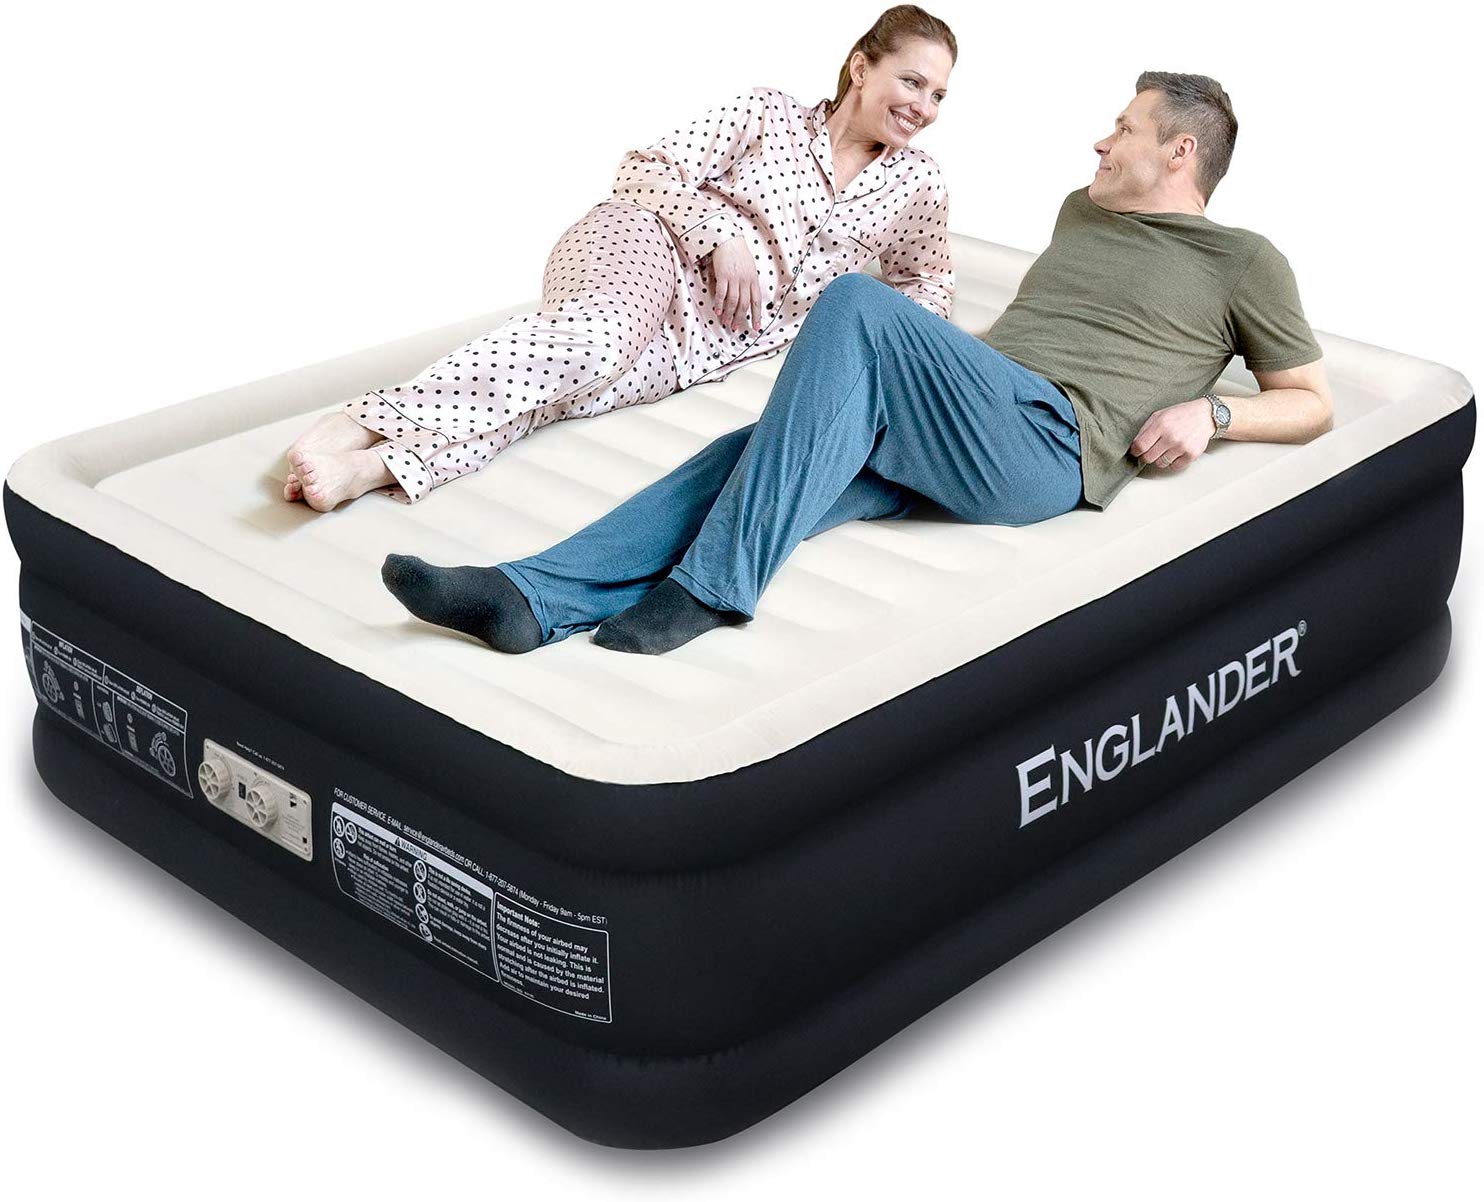 englander mattress for sale in oregon